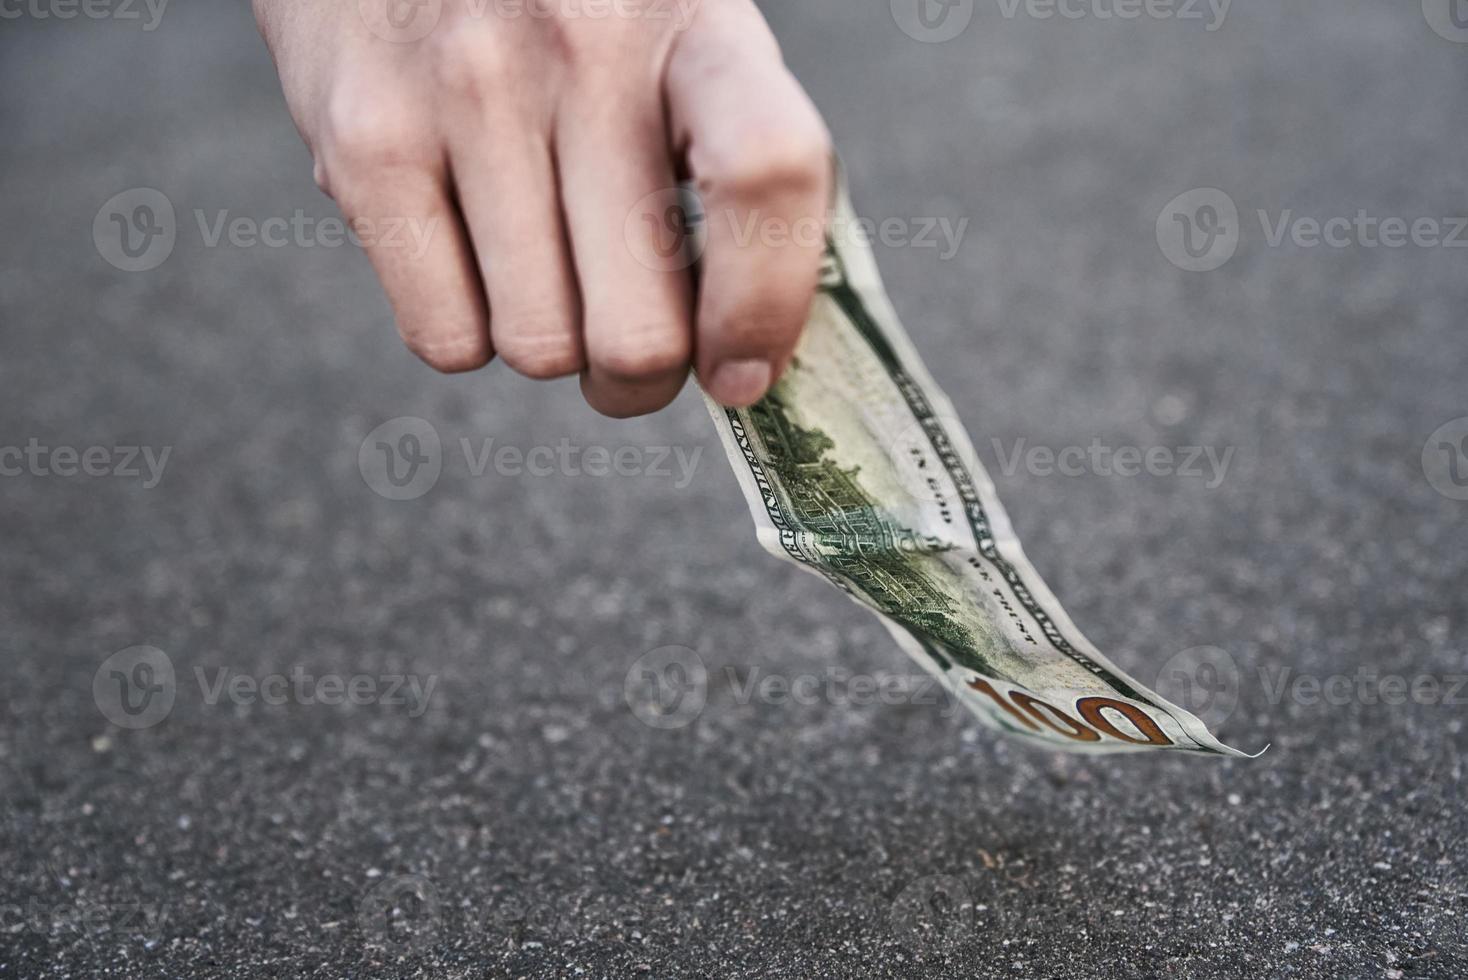 recoger a mano un billete de cien dólares del suelo. concepto de dinero encontrado foto